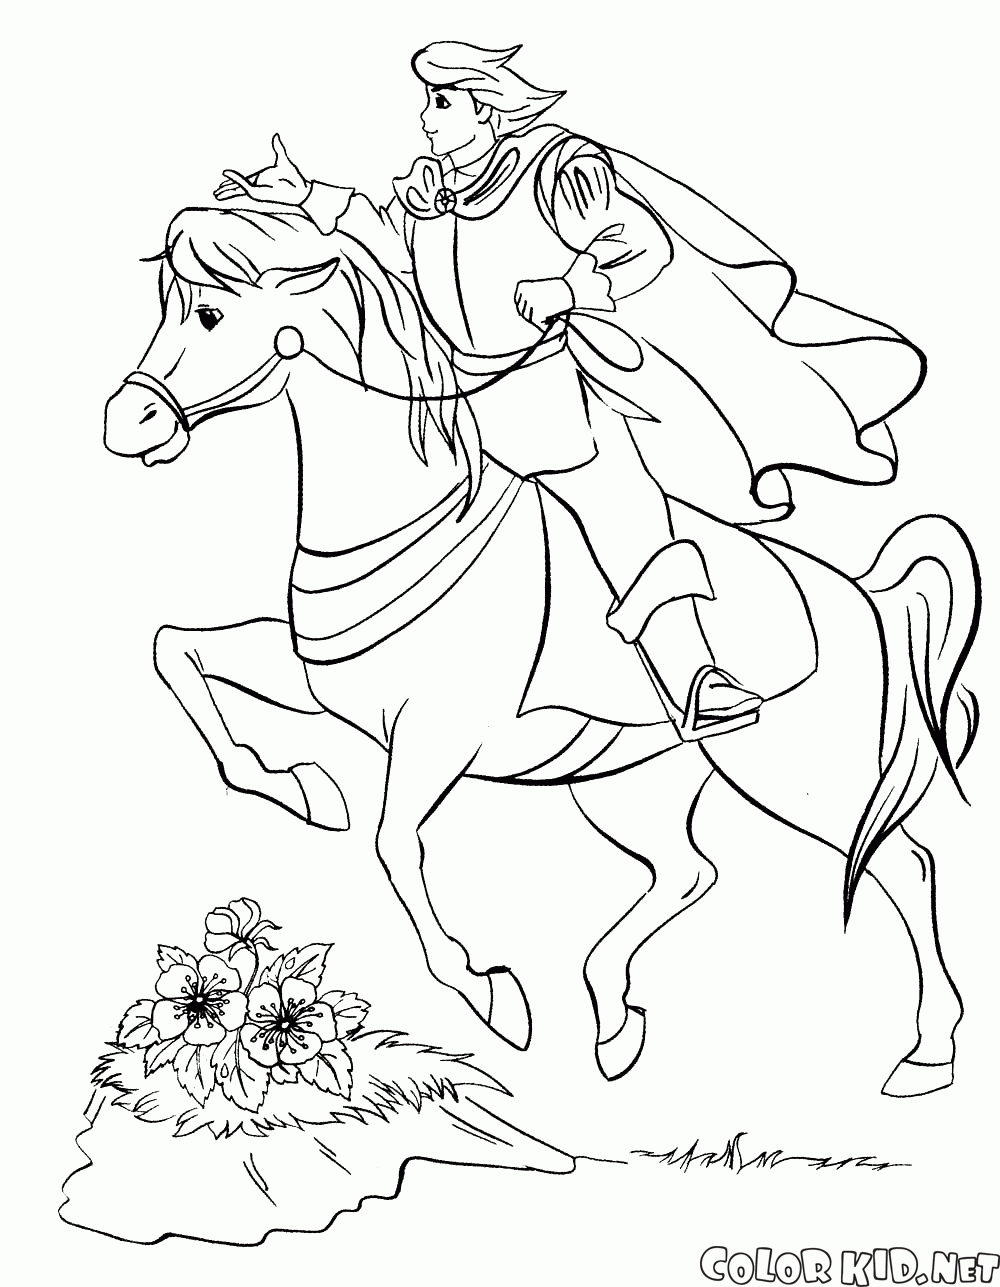 Malvorlagen   Prinz zu Pferd